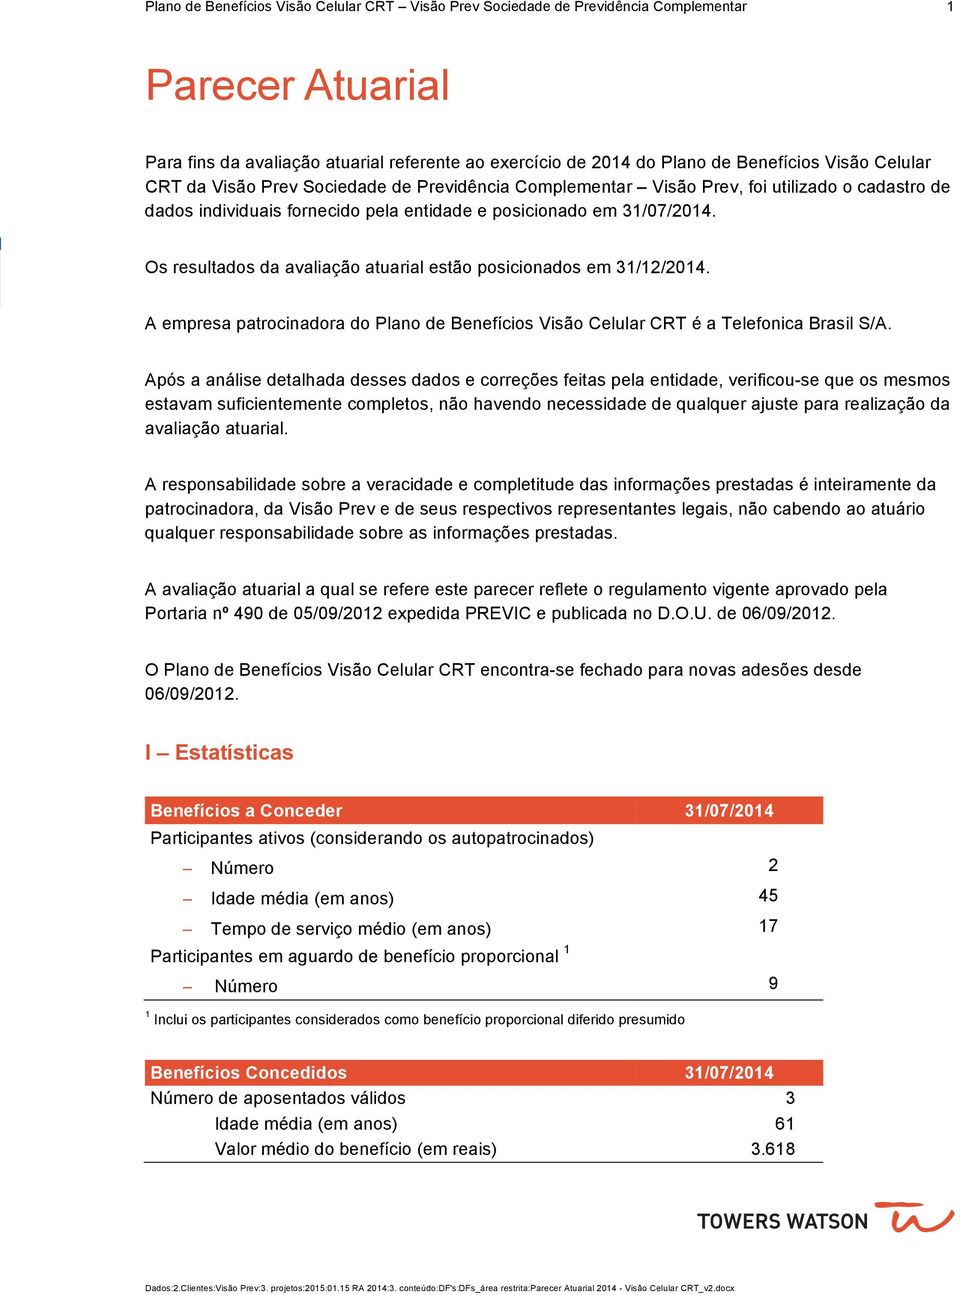 Os resultados da avaliação atuarial estão posicionados em 3//04. A empresa patrocinadora do Plano de Benefícios Visão Celular CRT é a Telefonica Brasil S/A.